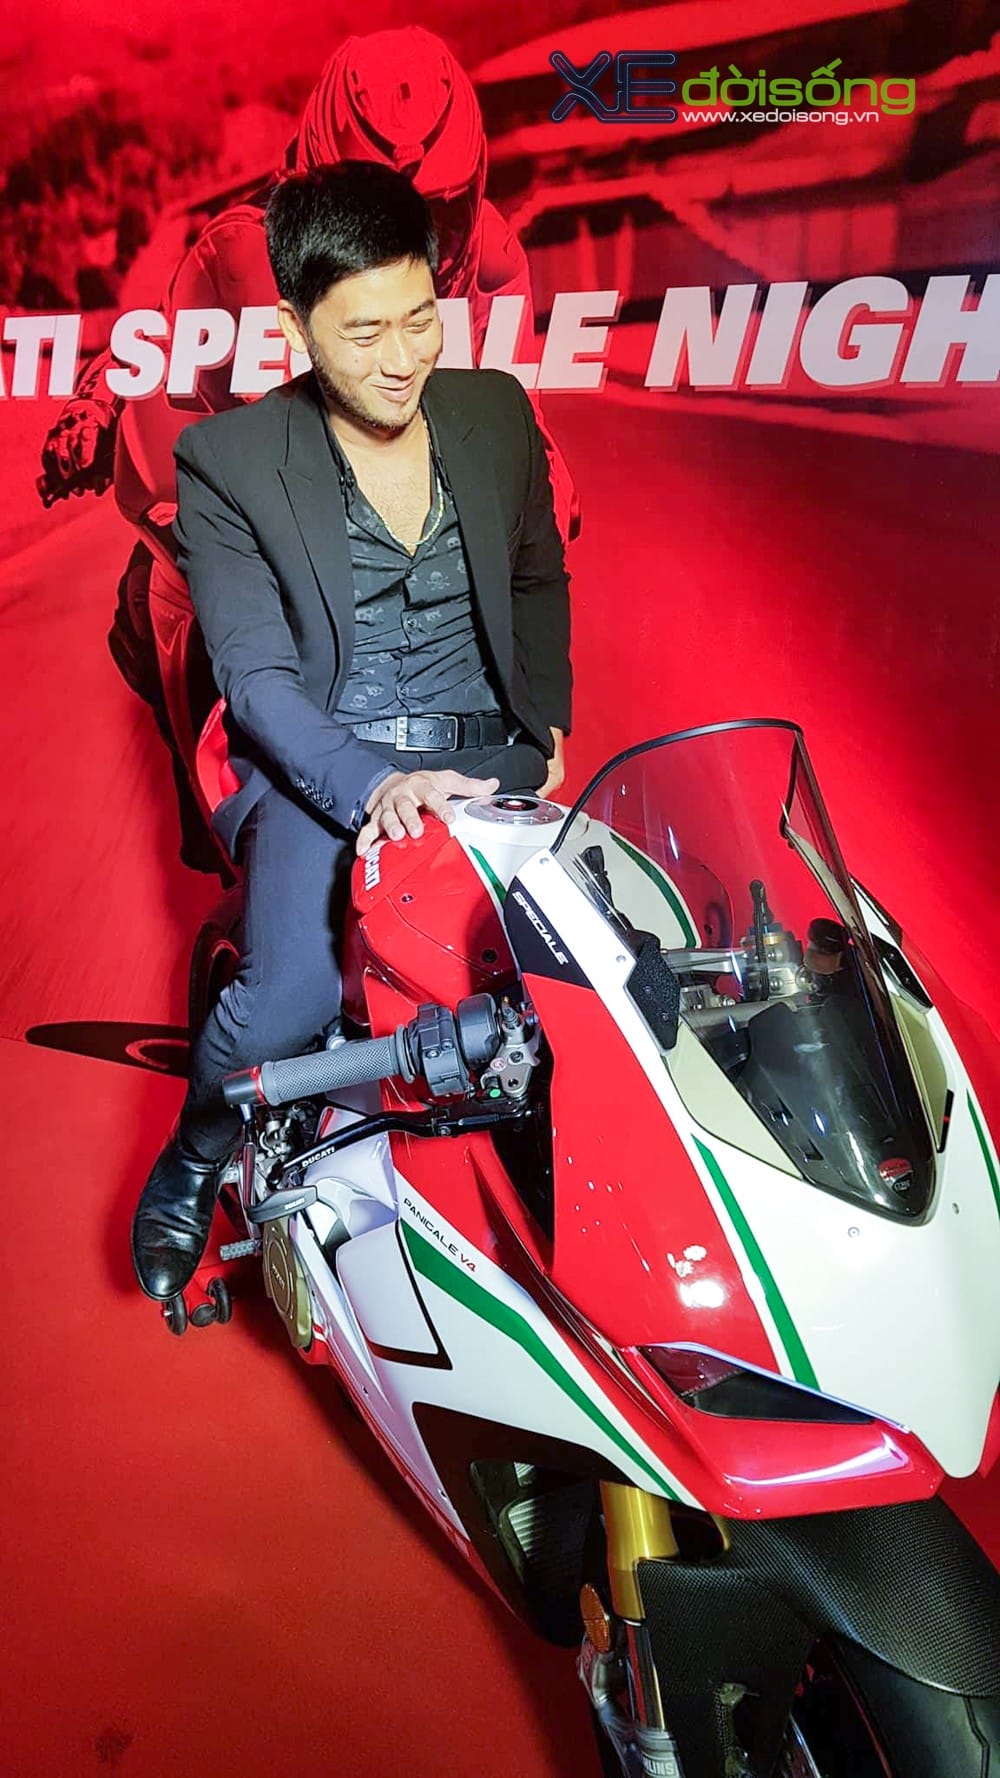 Biker Hà Nội mua Ducati Panigale V4 Speciale đầu tiên Châu Á giá 2 tỷ đồng  ảnh 2